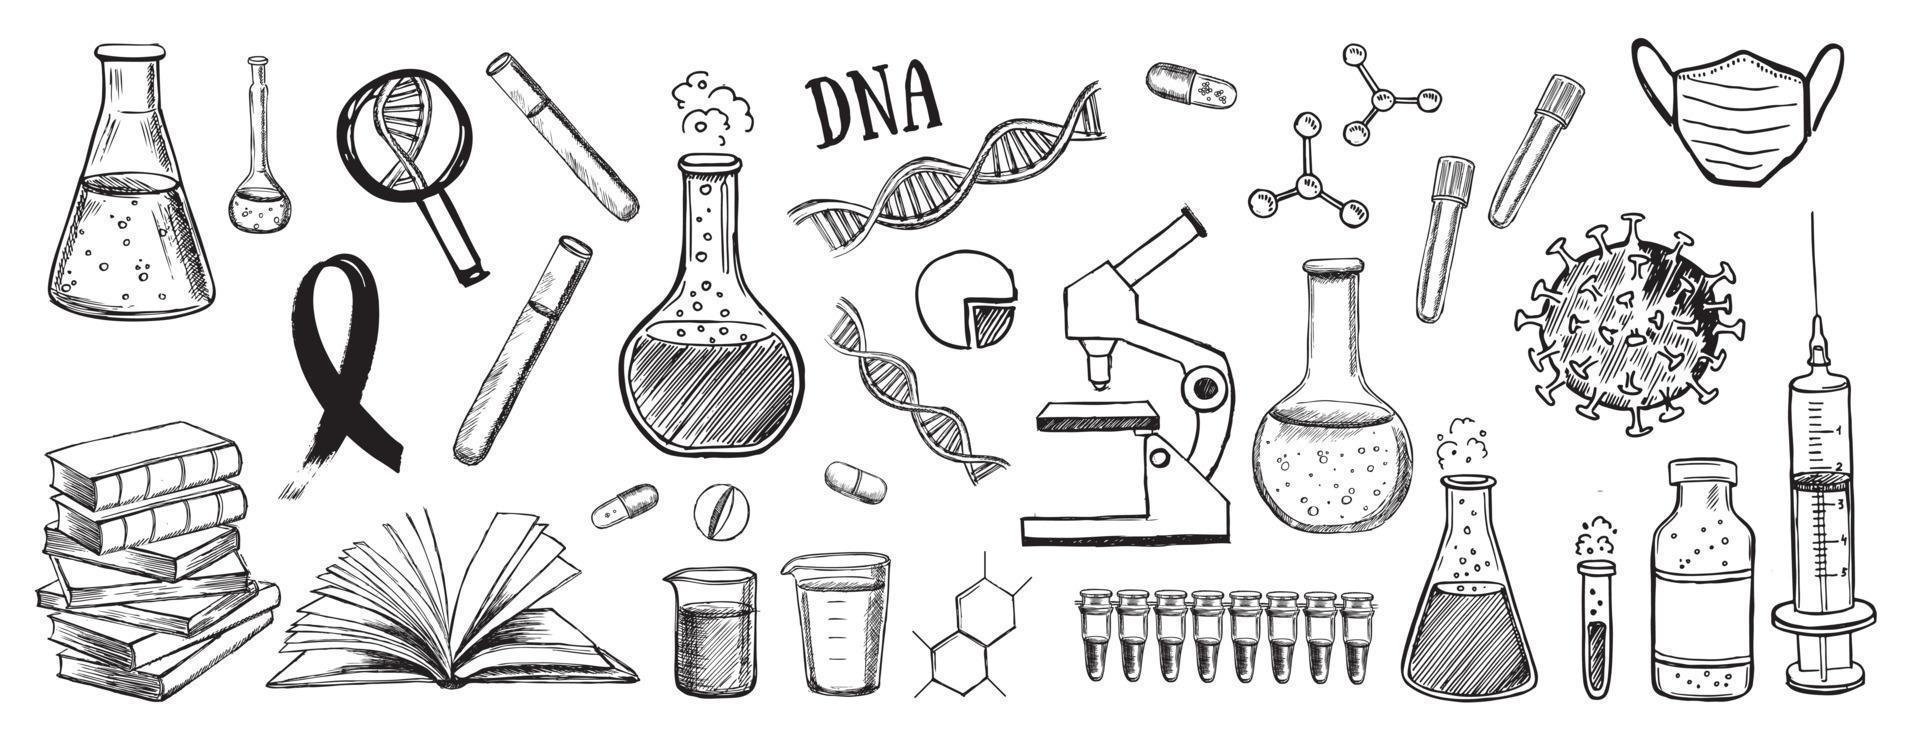 Laborforschung Vektor handgezeichnete Symbole gesetzt. Coronavirus, DNA, Bluttest.